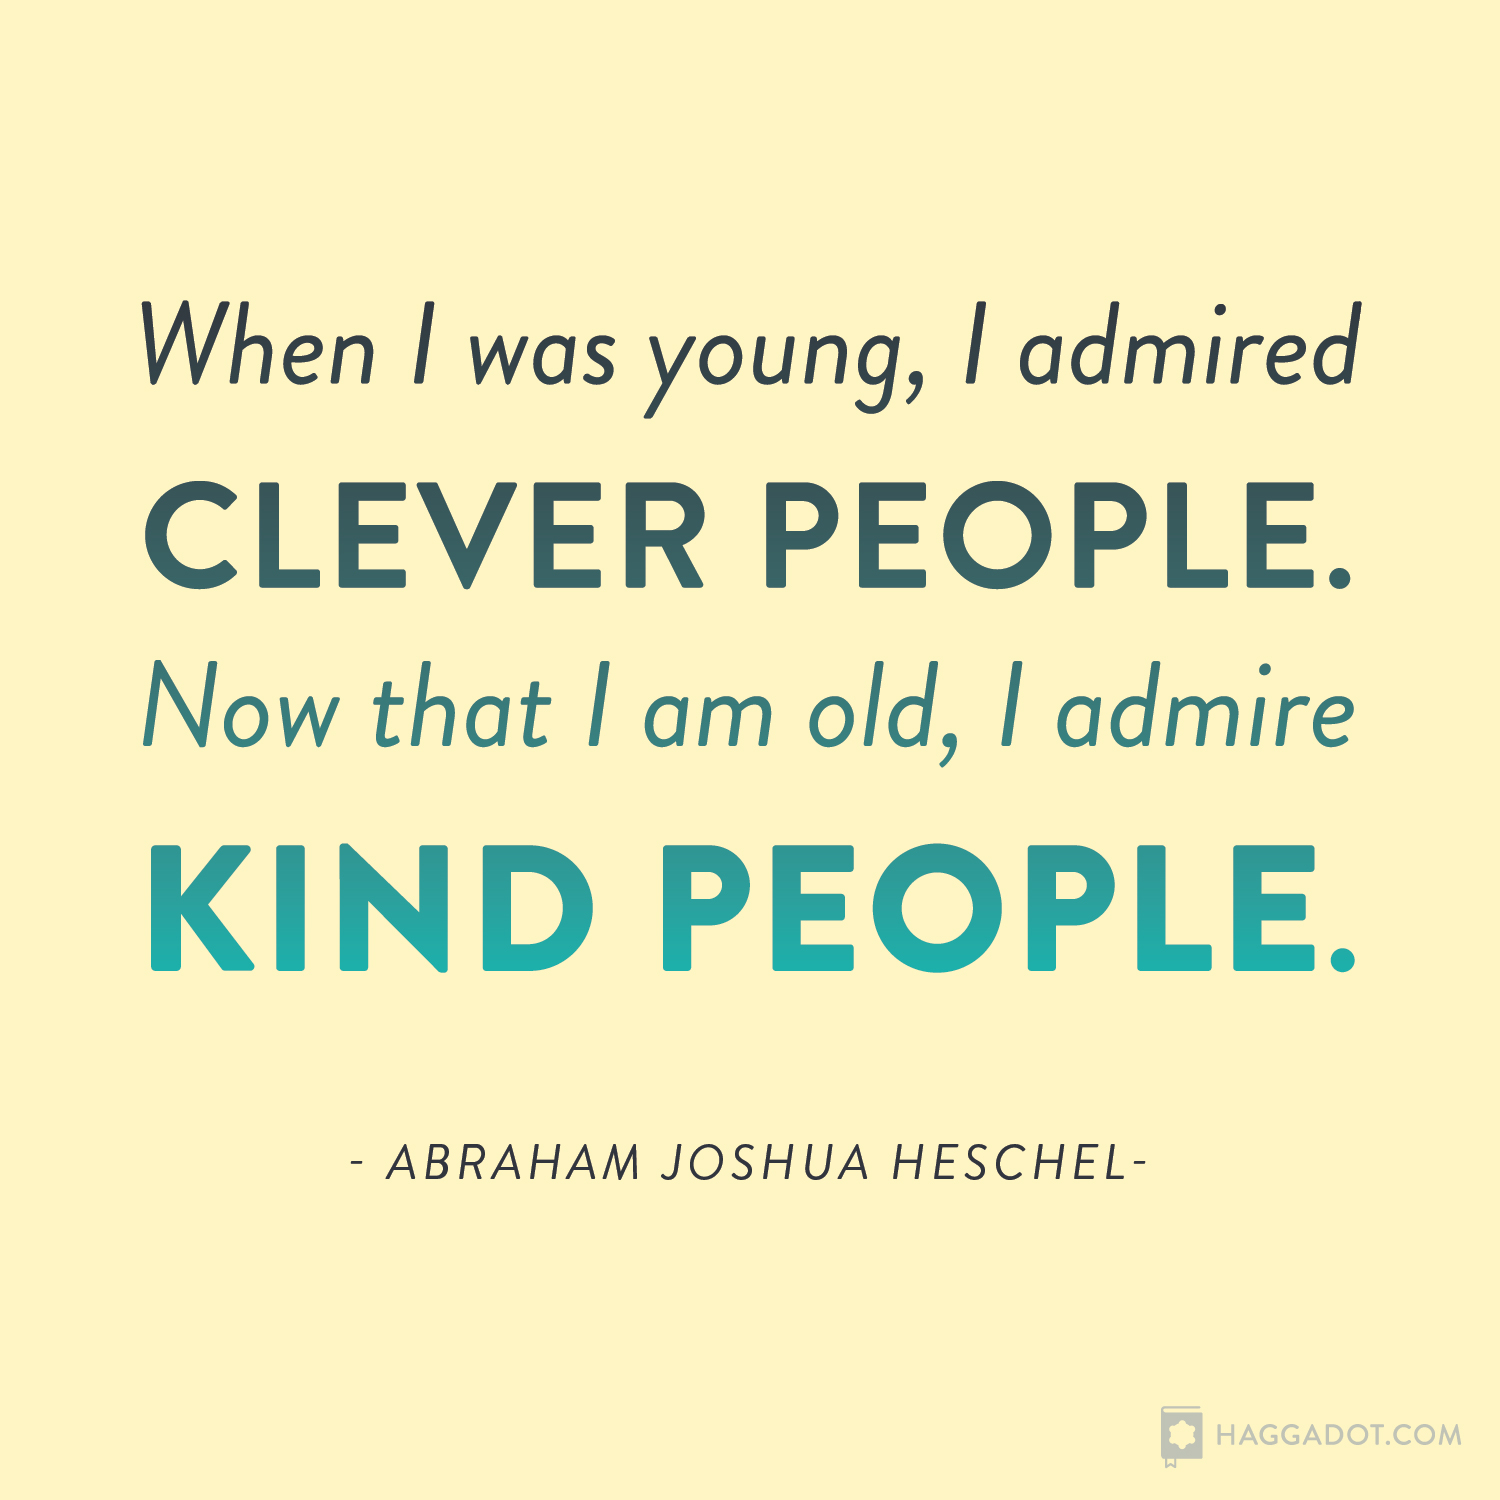 Heschel on Kindness